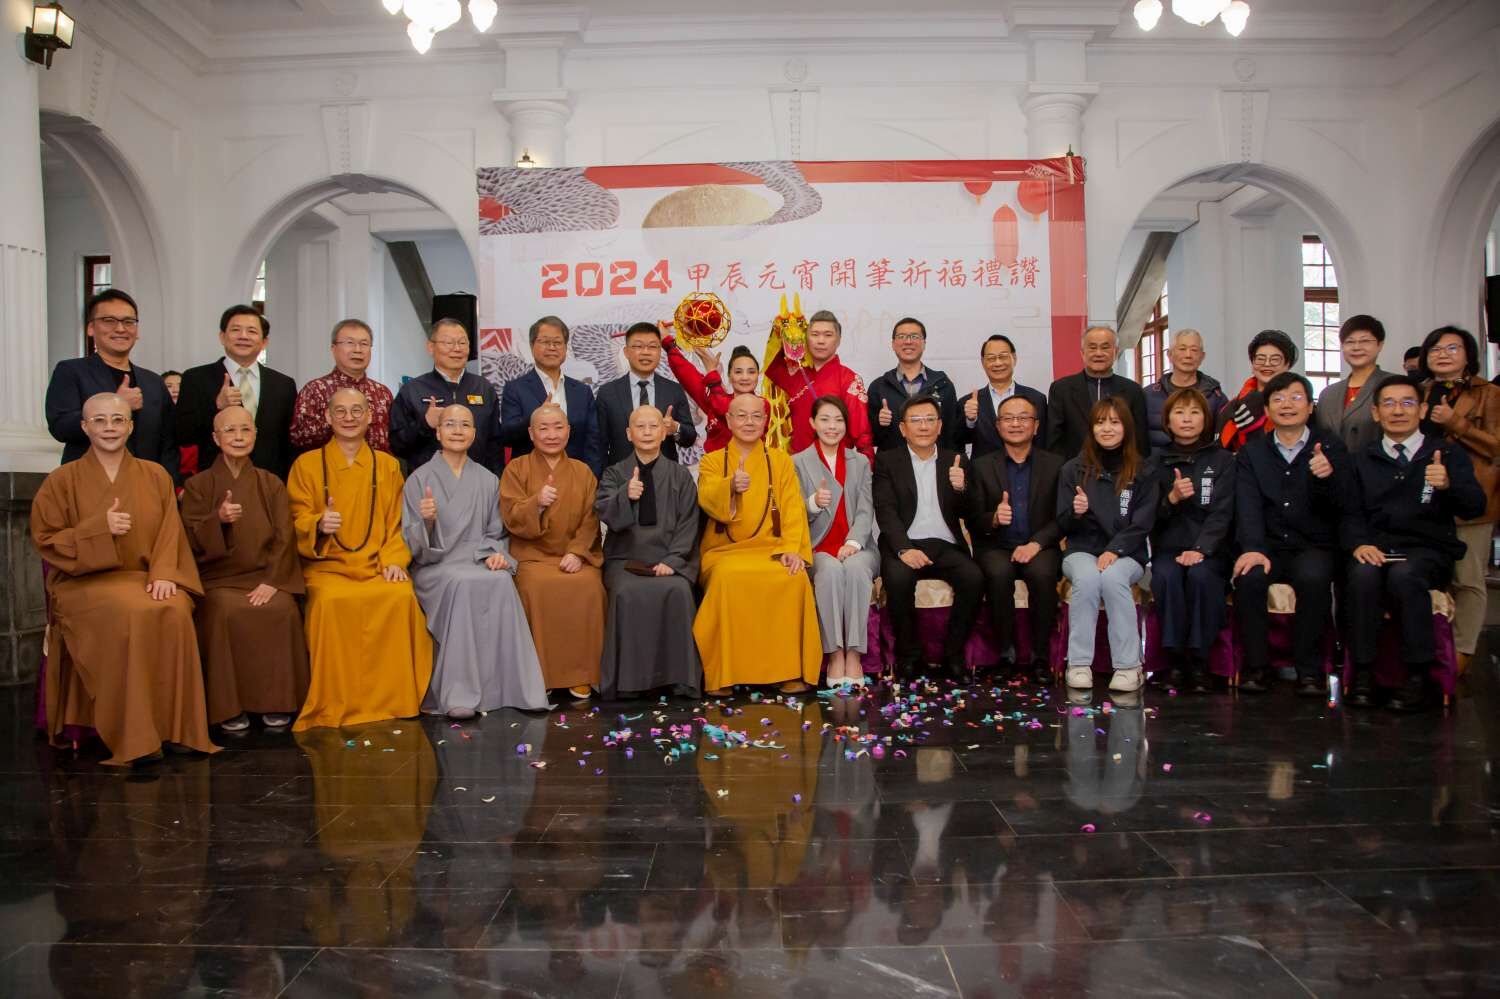 新竹市佛教會舉辦「2024年甲辰元宵祥龍獻福開筆祈福禮讚」大合照